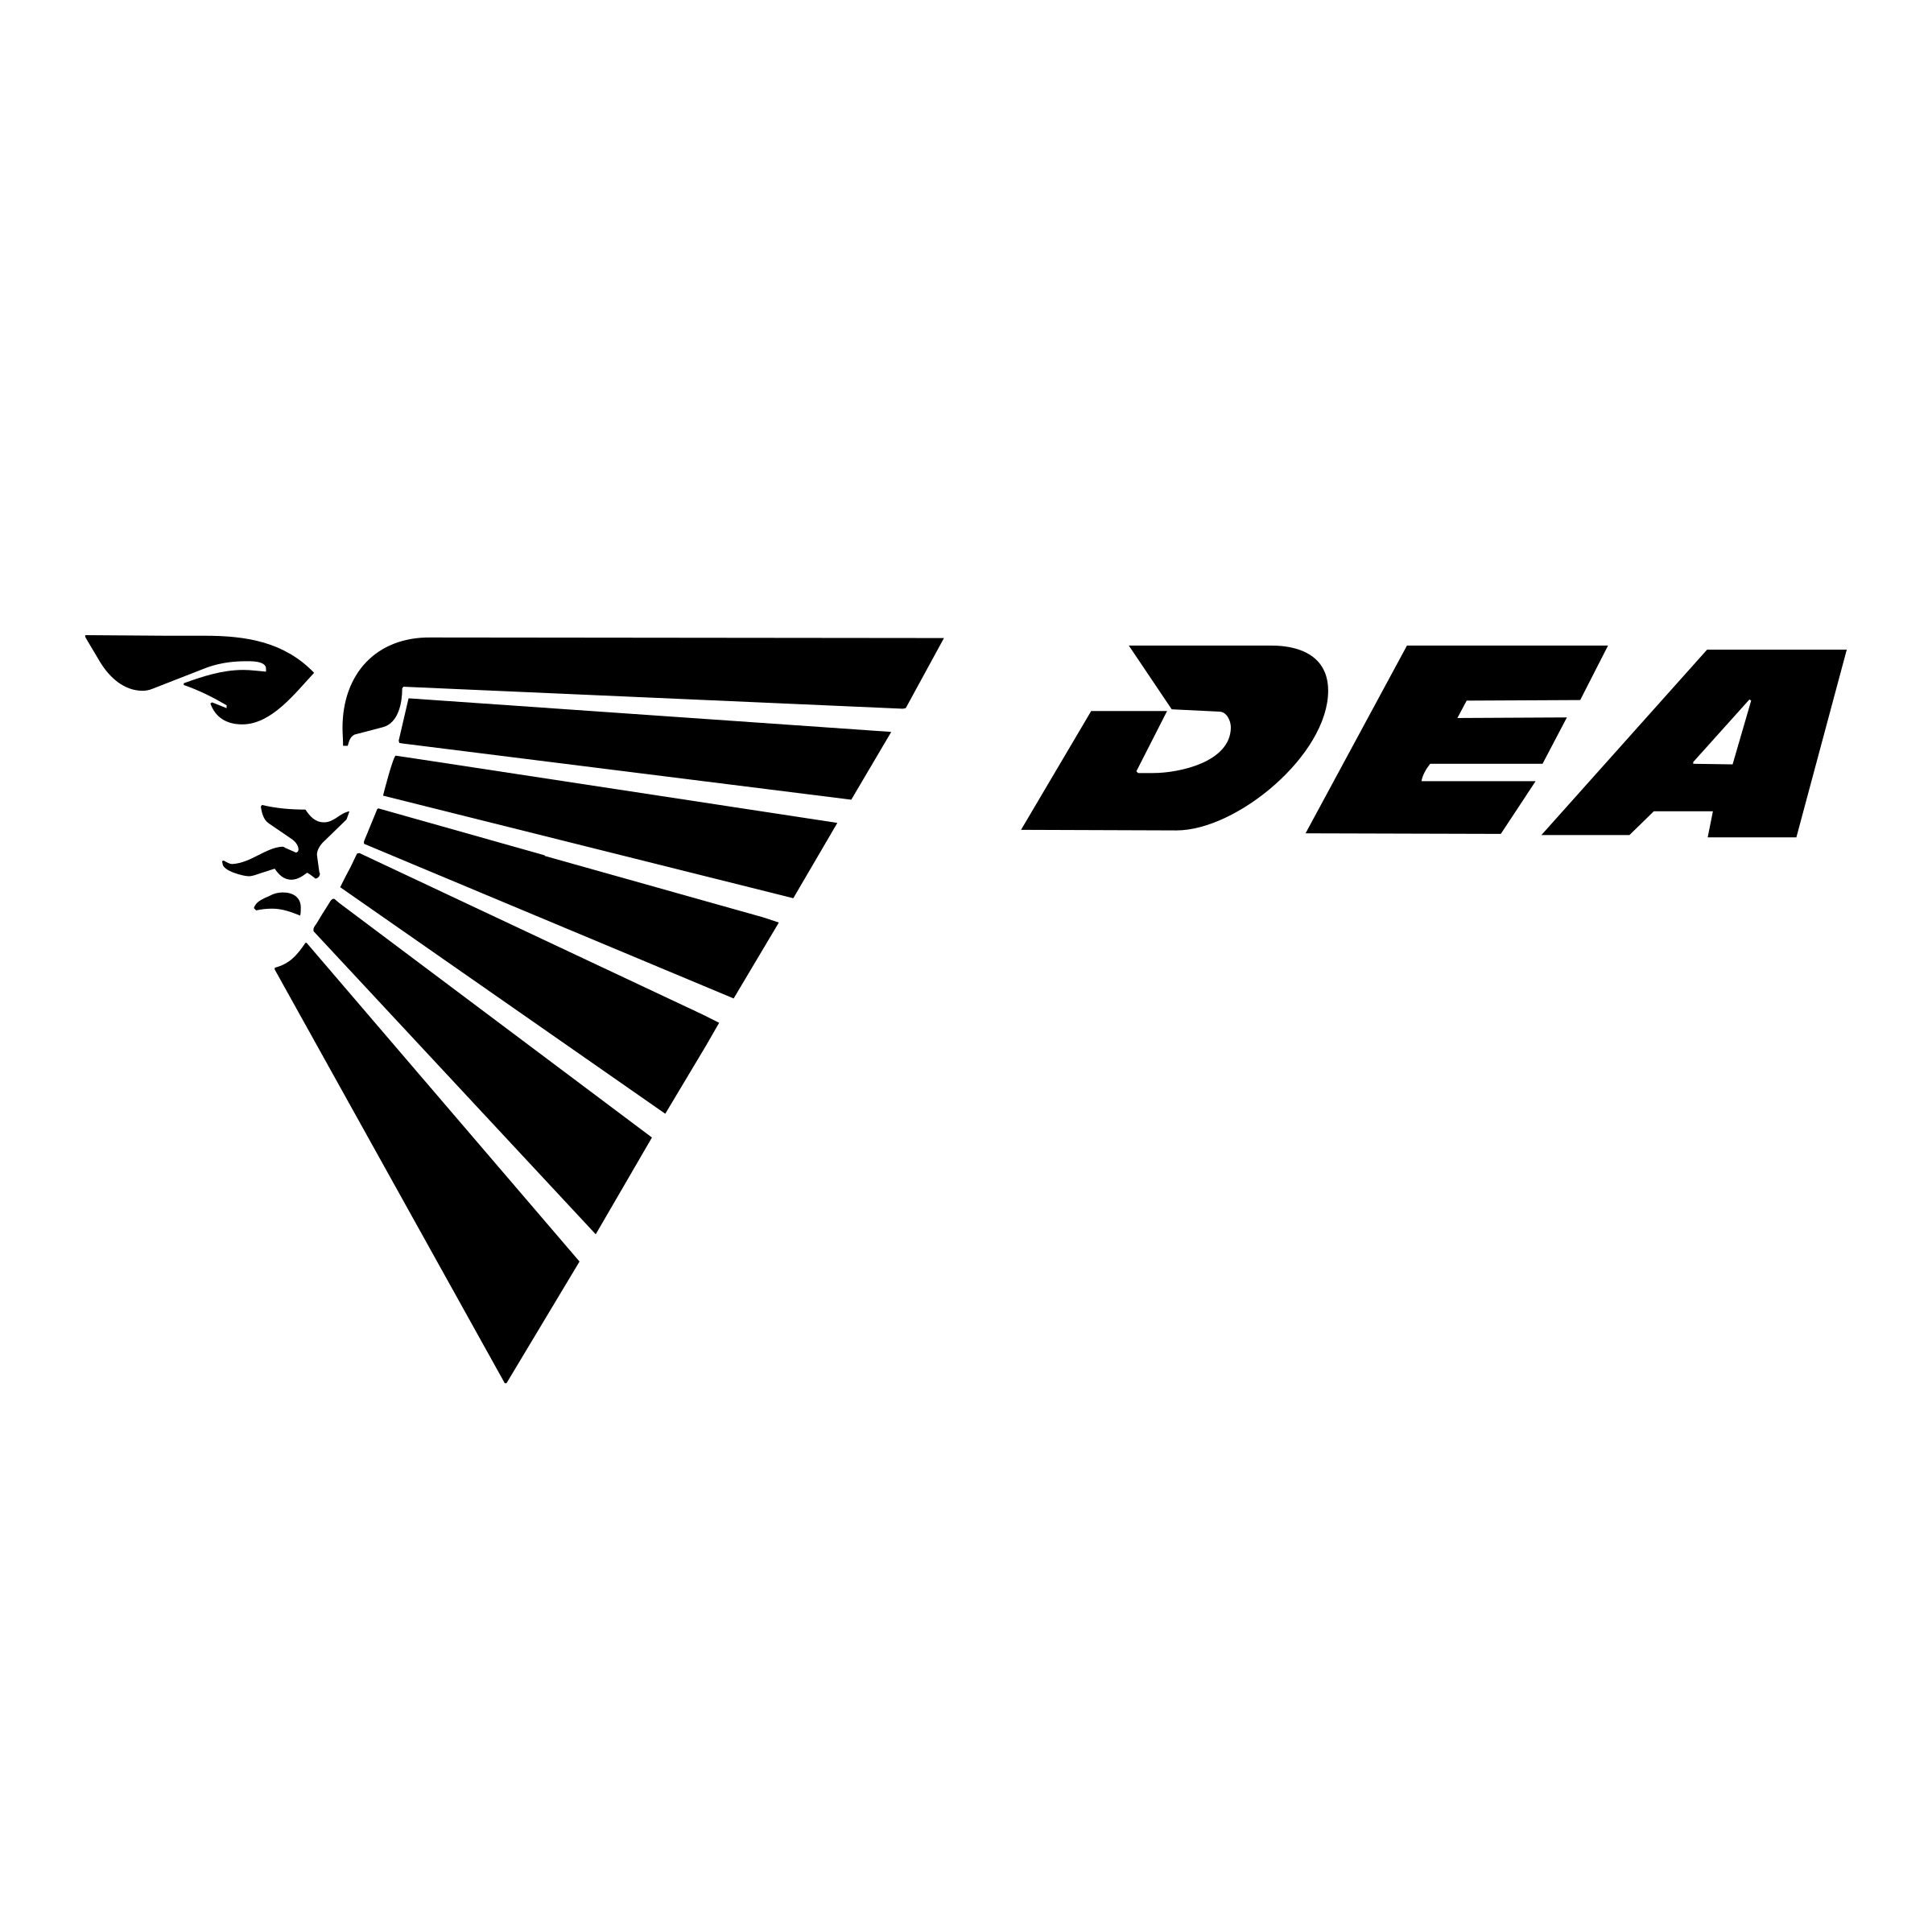 Dea Logo - DEA Logo PNG Transparent & SVG Vector